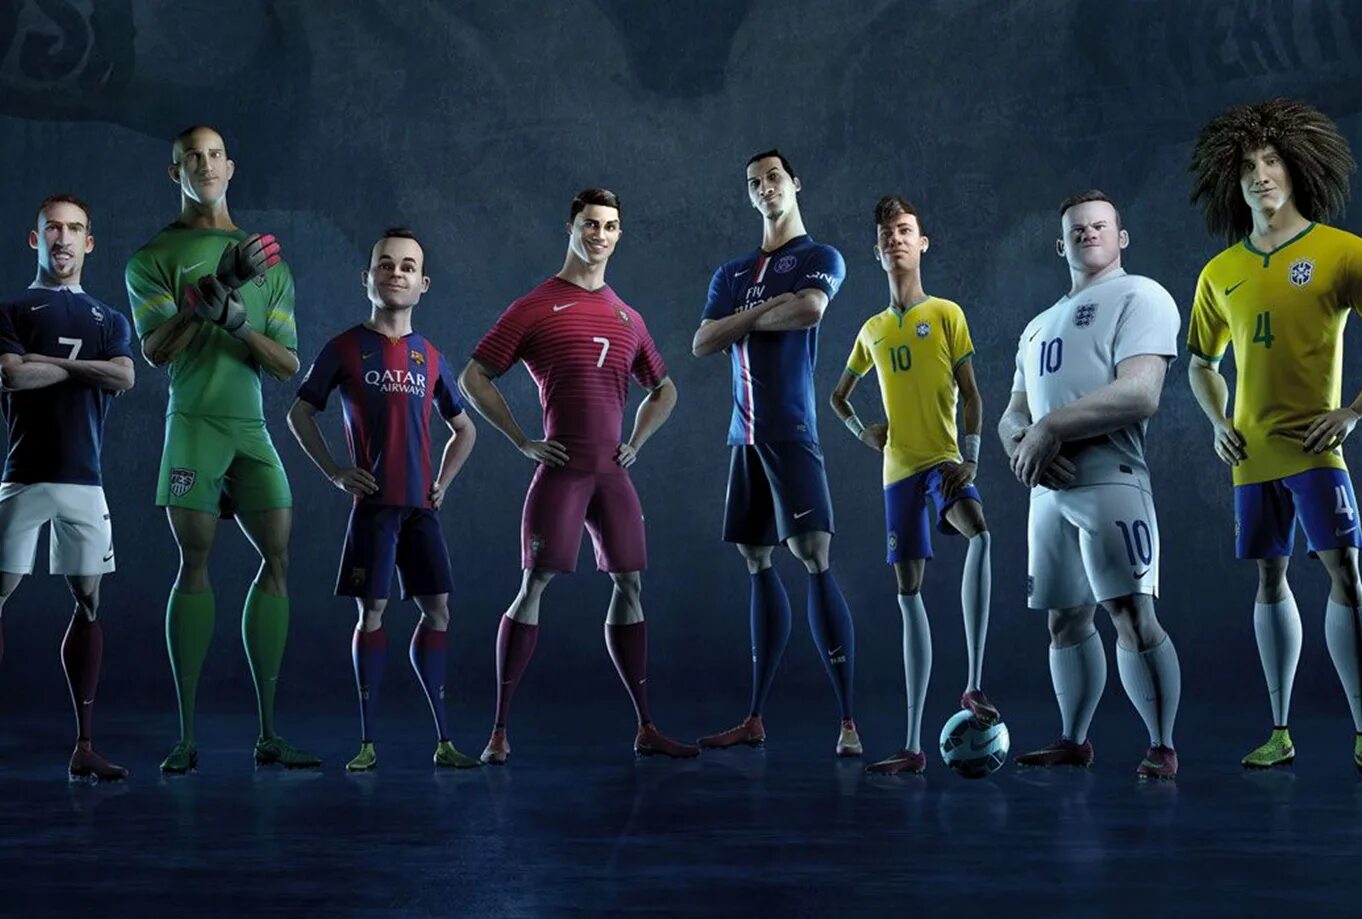 Игра в команде 7 игроков. Nike Football последняя игра. Nike Football 2022. Реклама найк футбол.